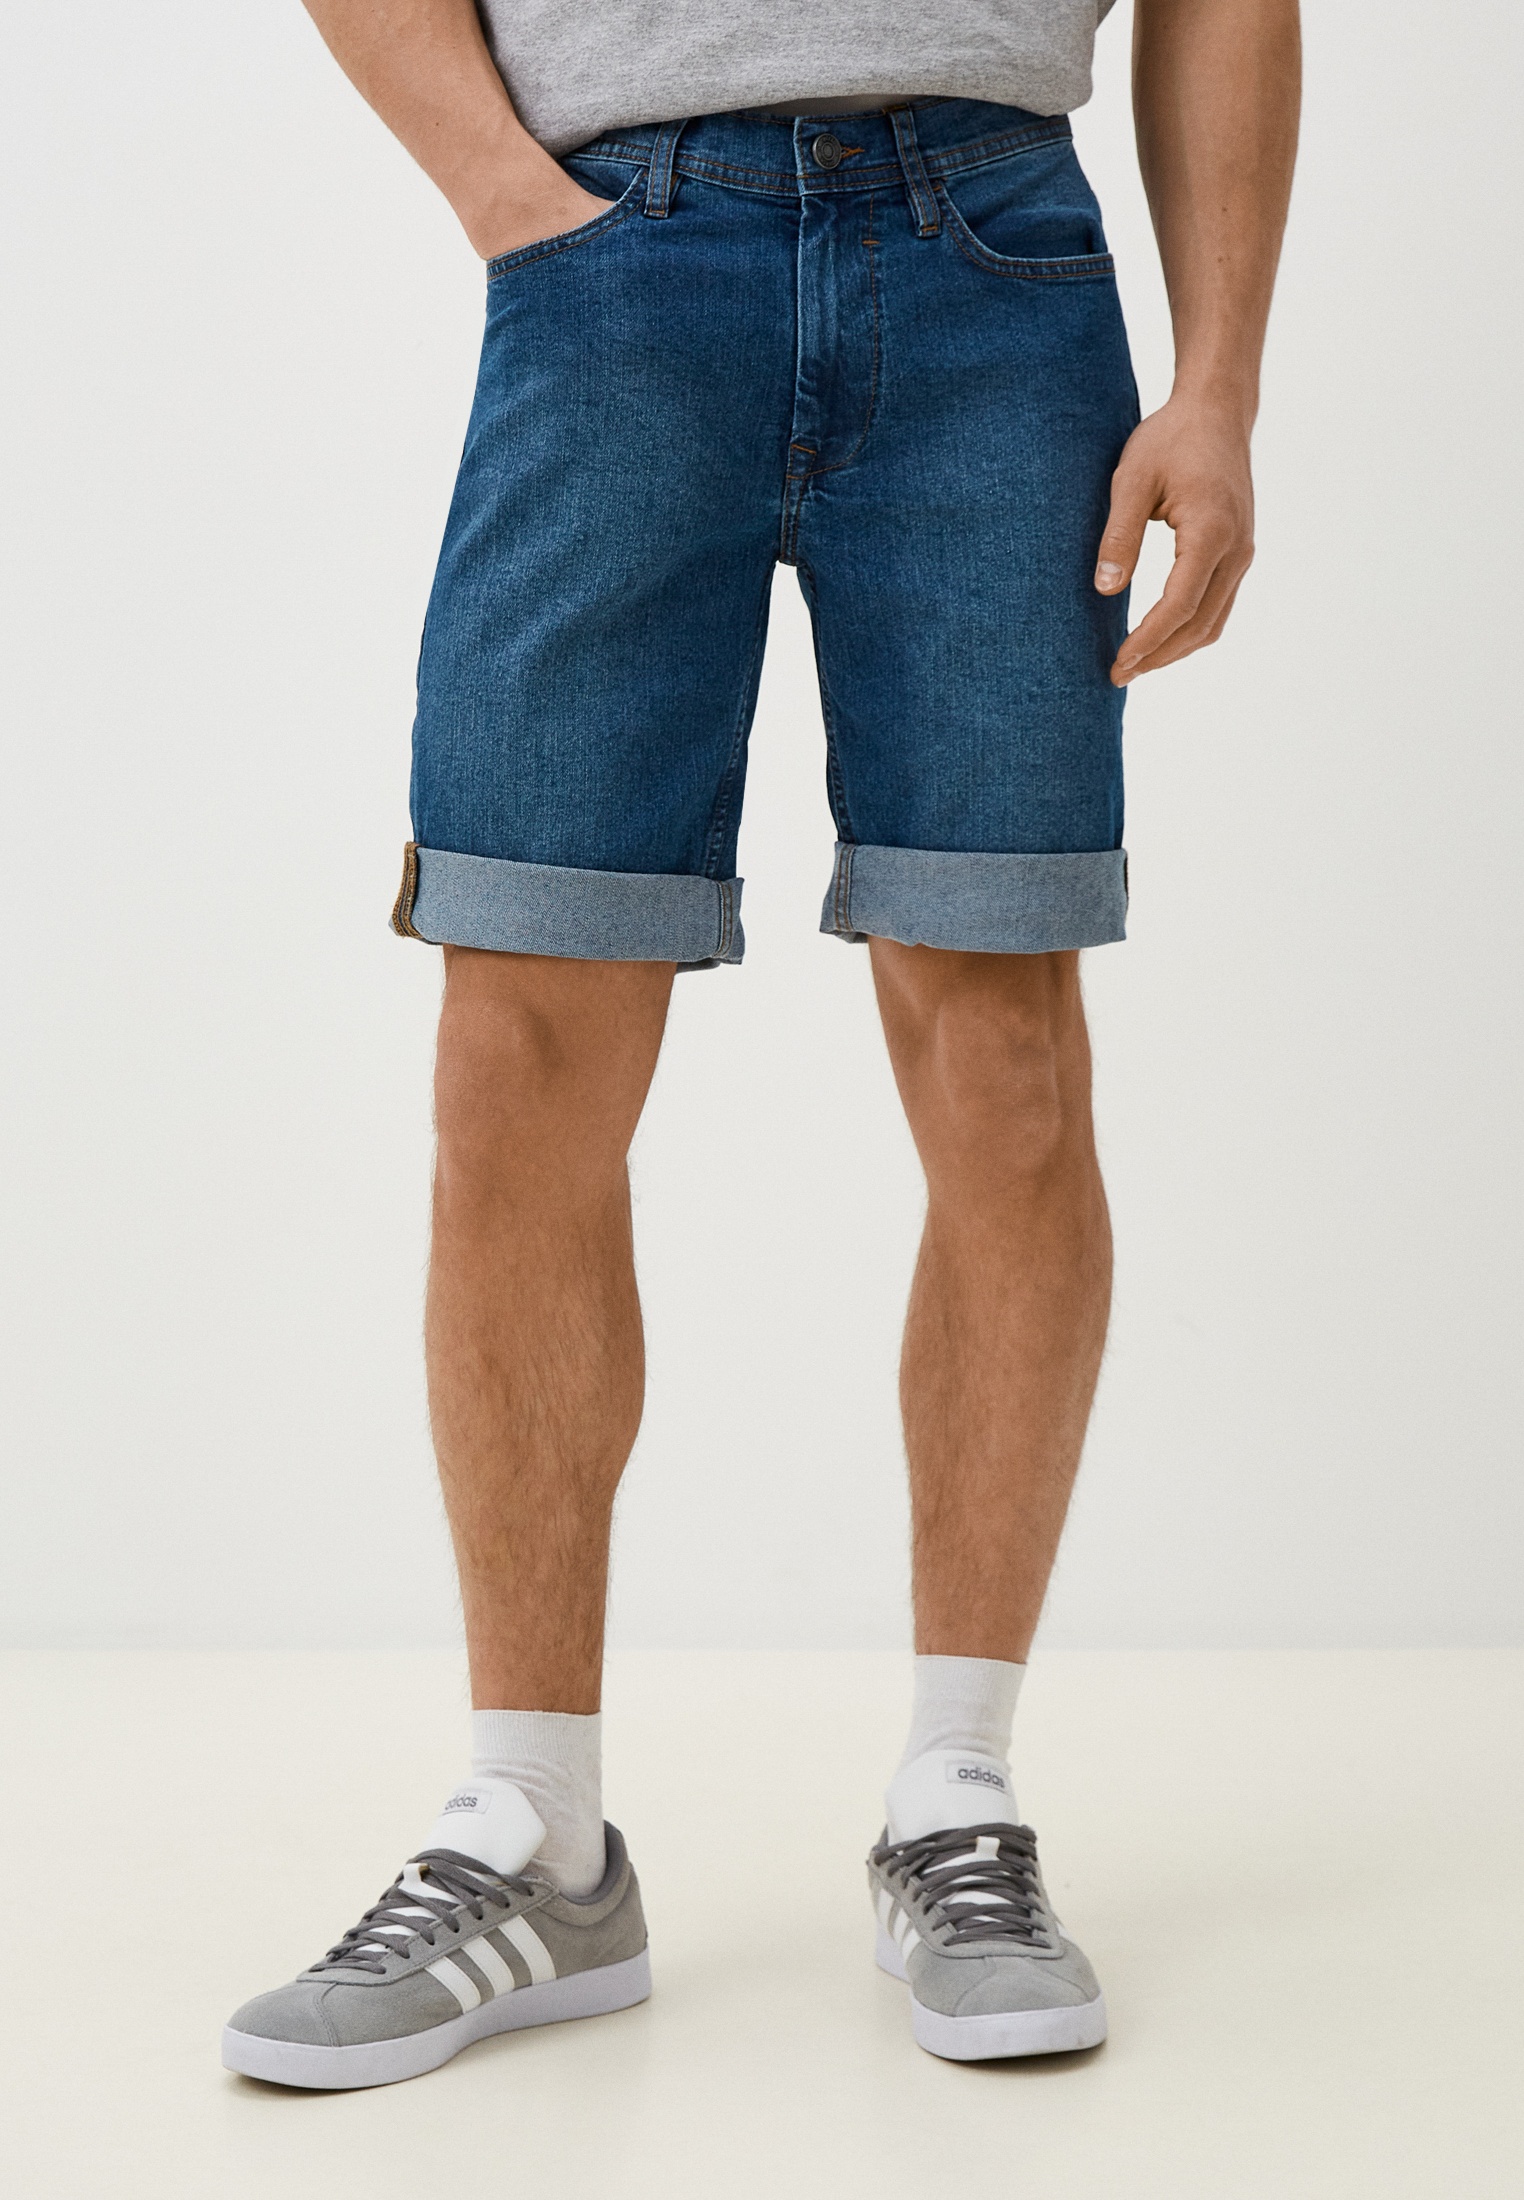 Мужские джинсовые шорты Blend (Бленд) 20716430